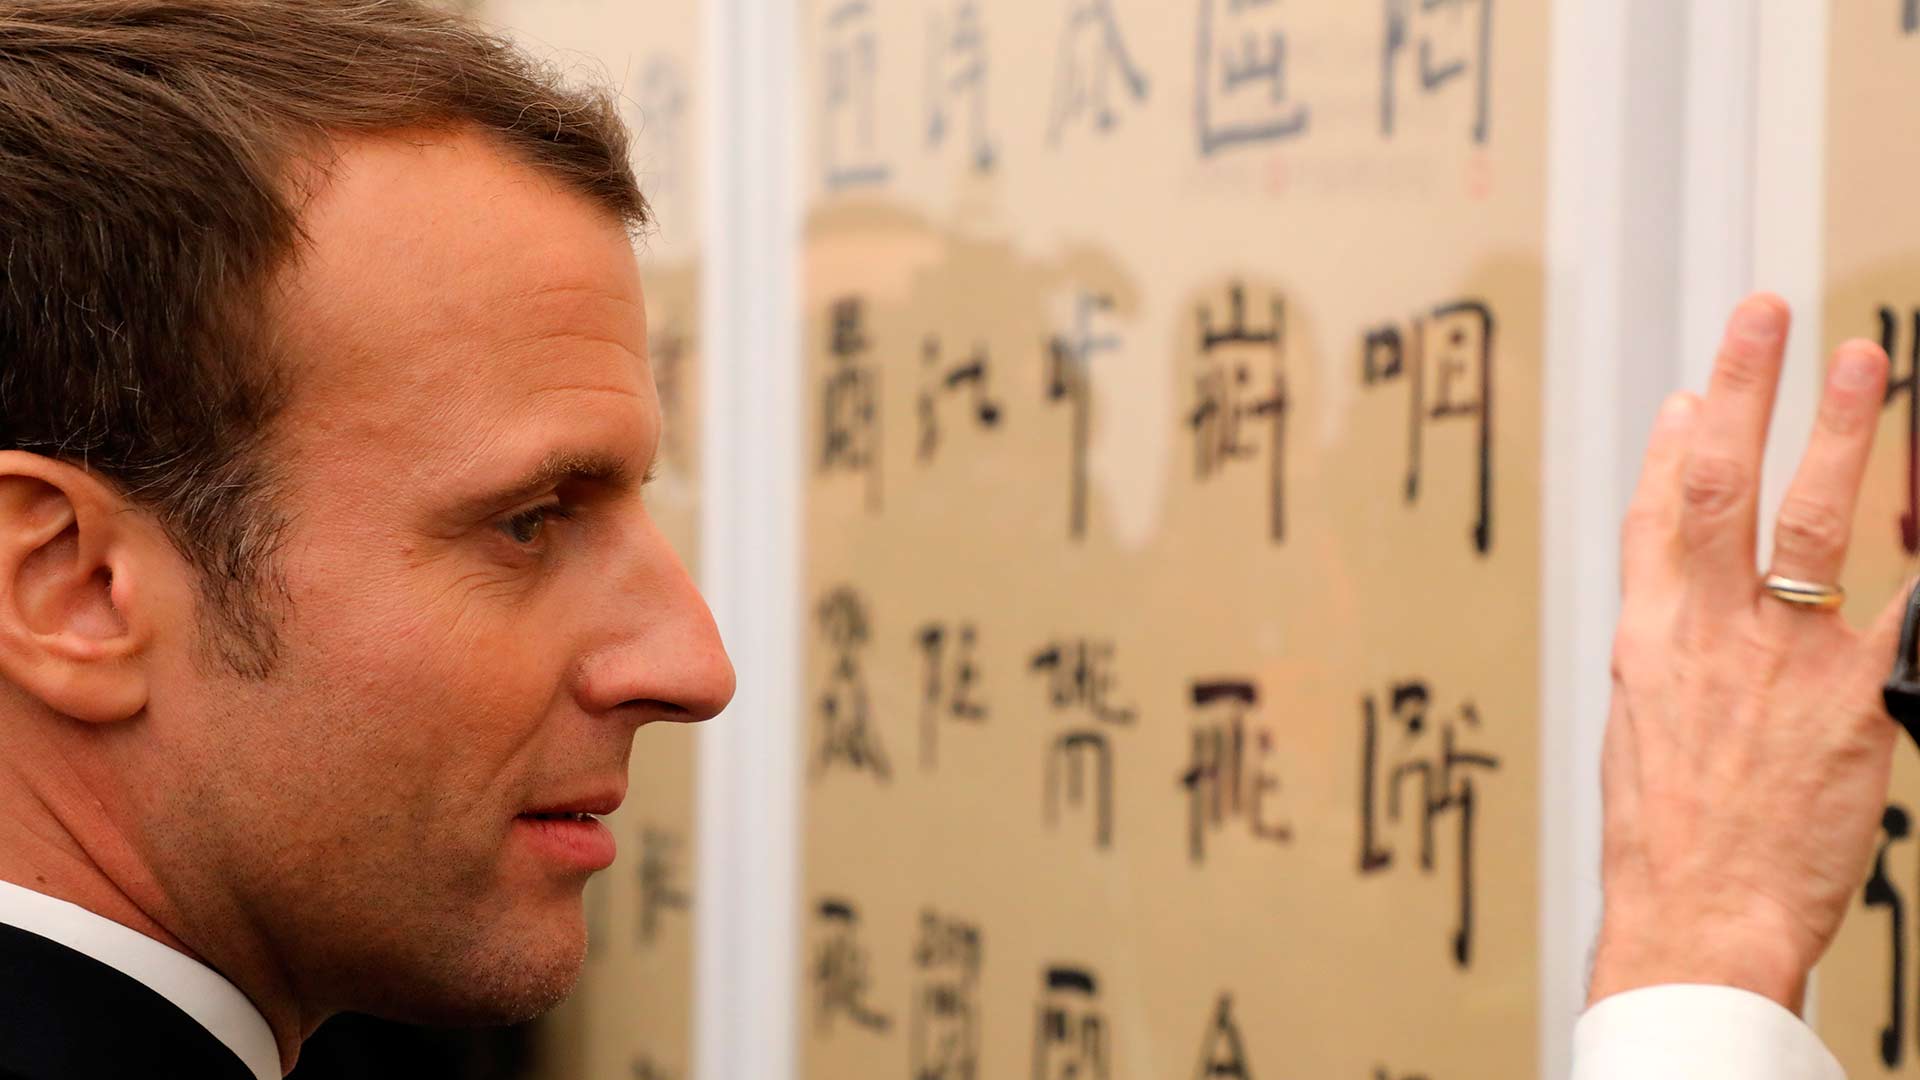 El aprendizaje de mandarín de Macron inunda las redes sociales chinas